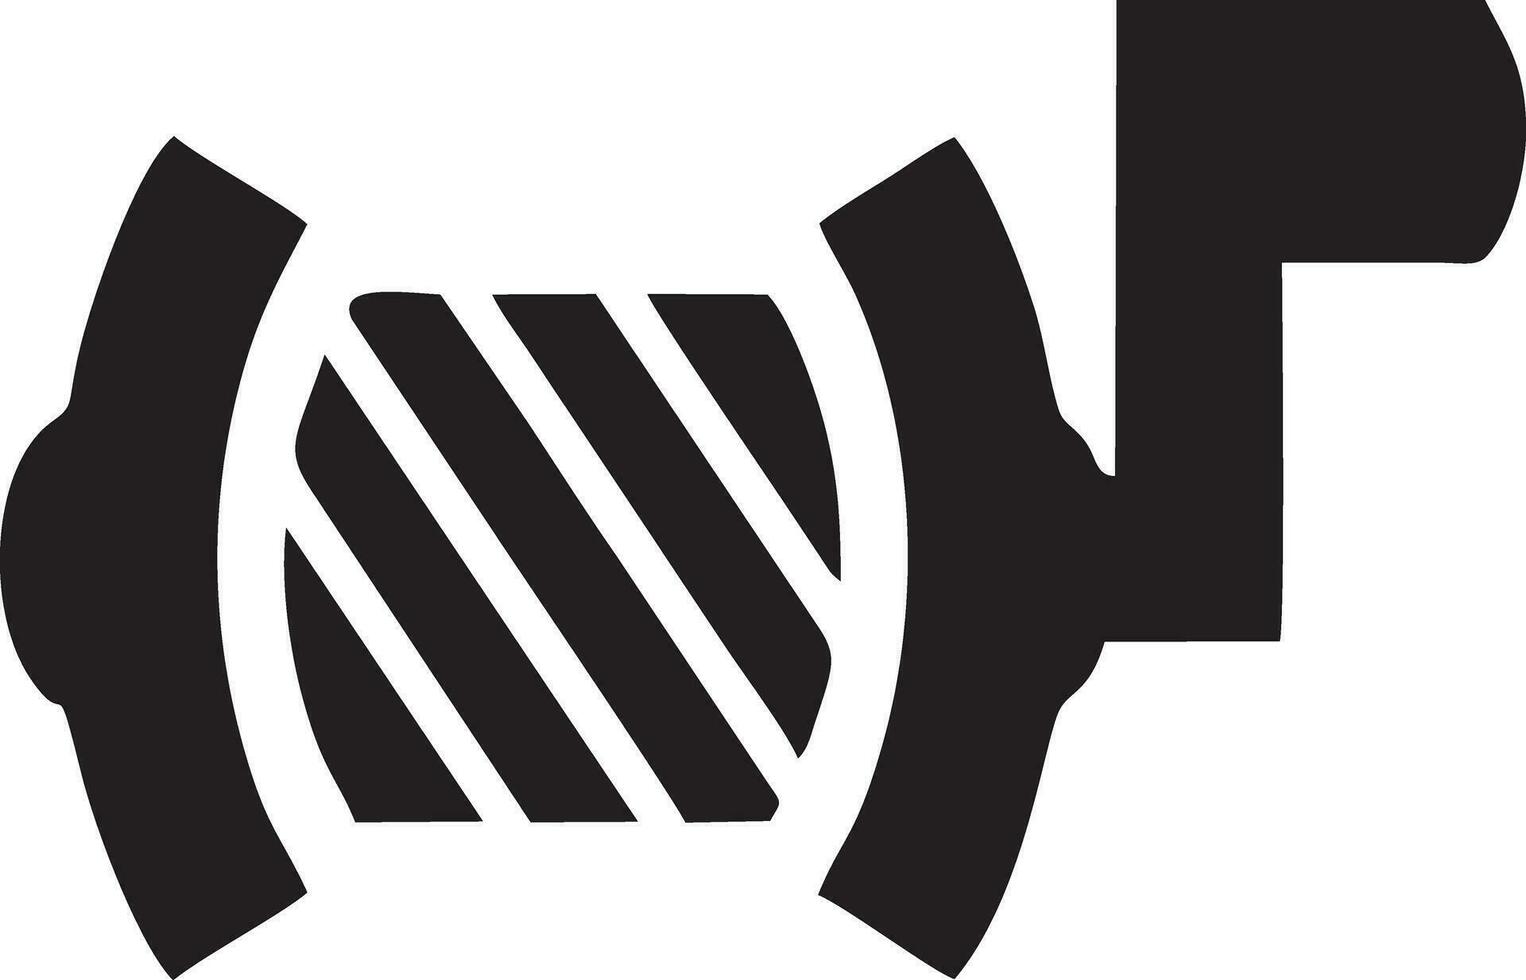 Fisch Haken Logo Symbol schwarz und Weiß vektor